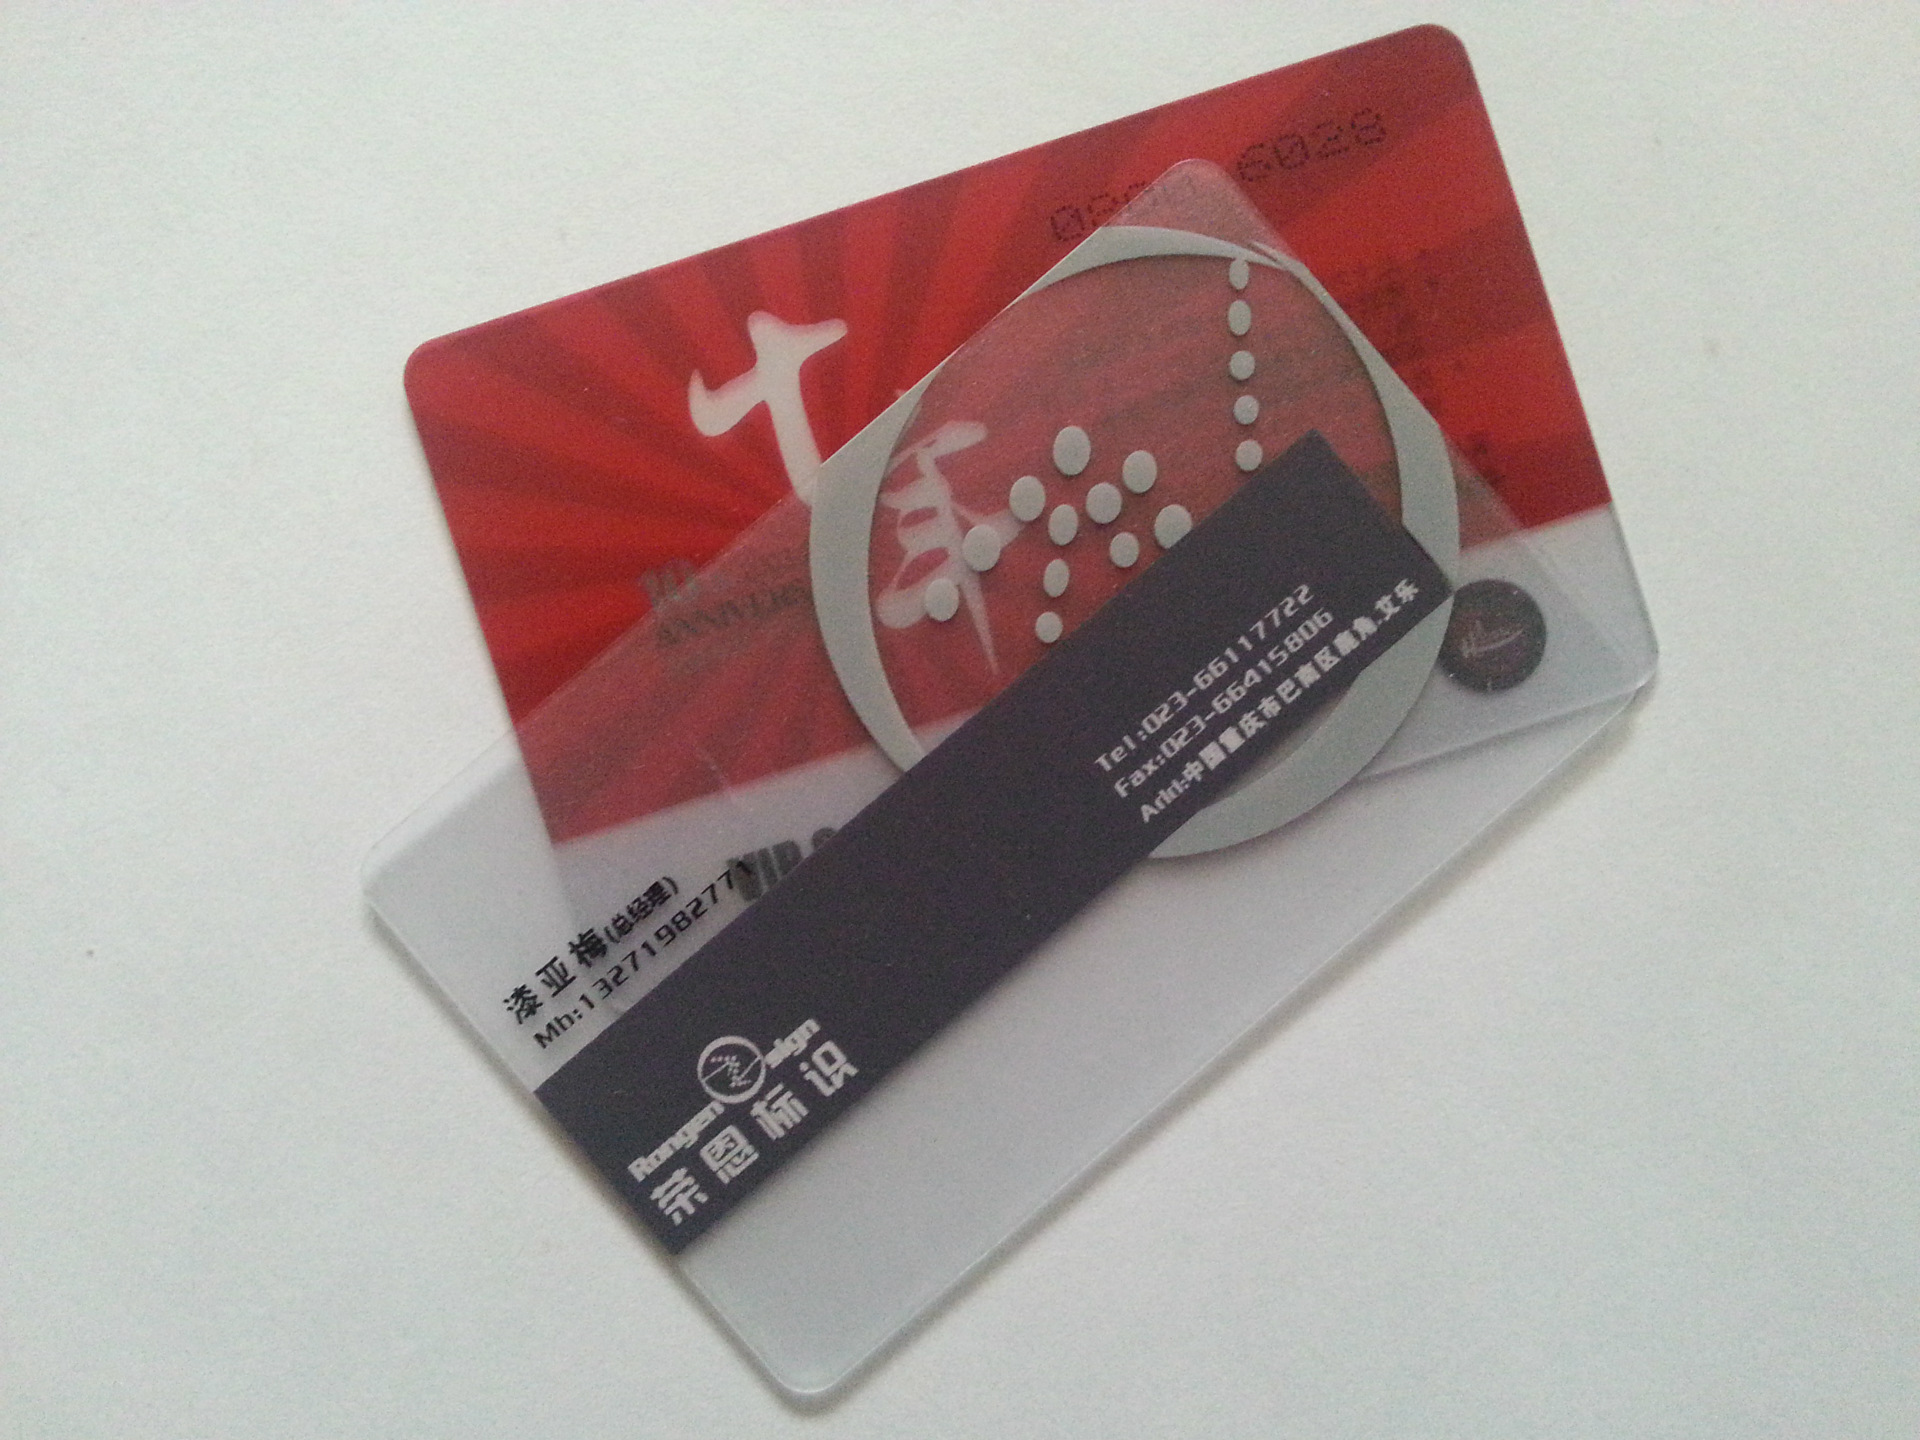 厂家供应pvc透明卡 磁条透明卡 透明卡制作 vip透明卡 全透明卡